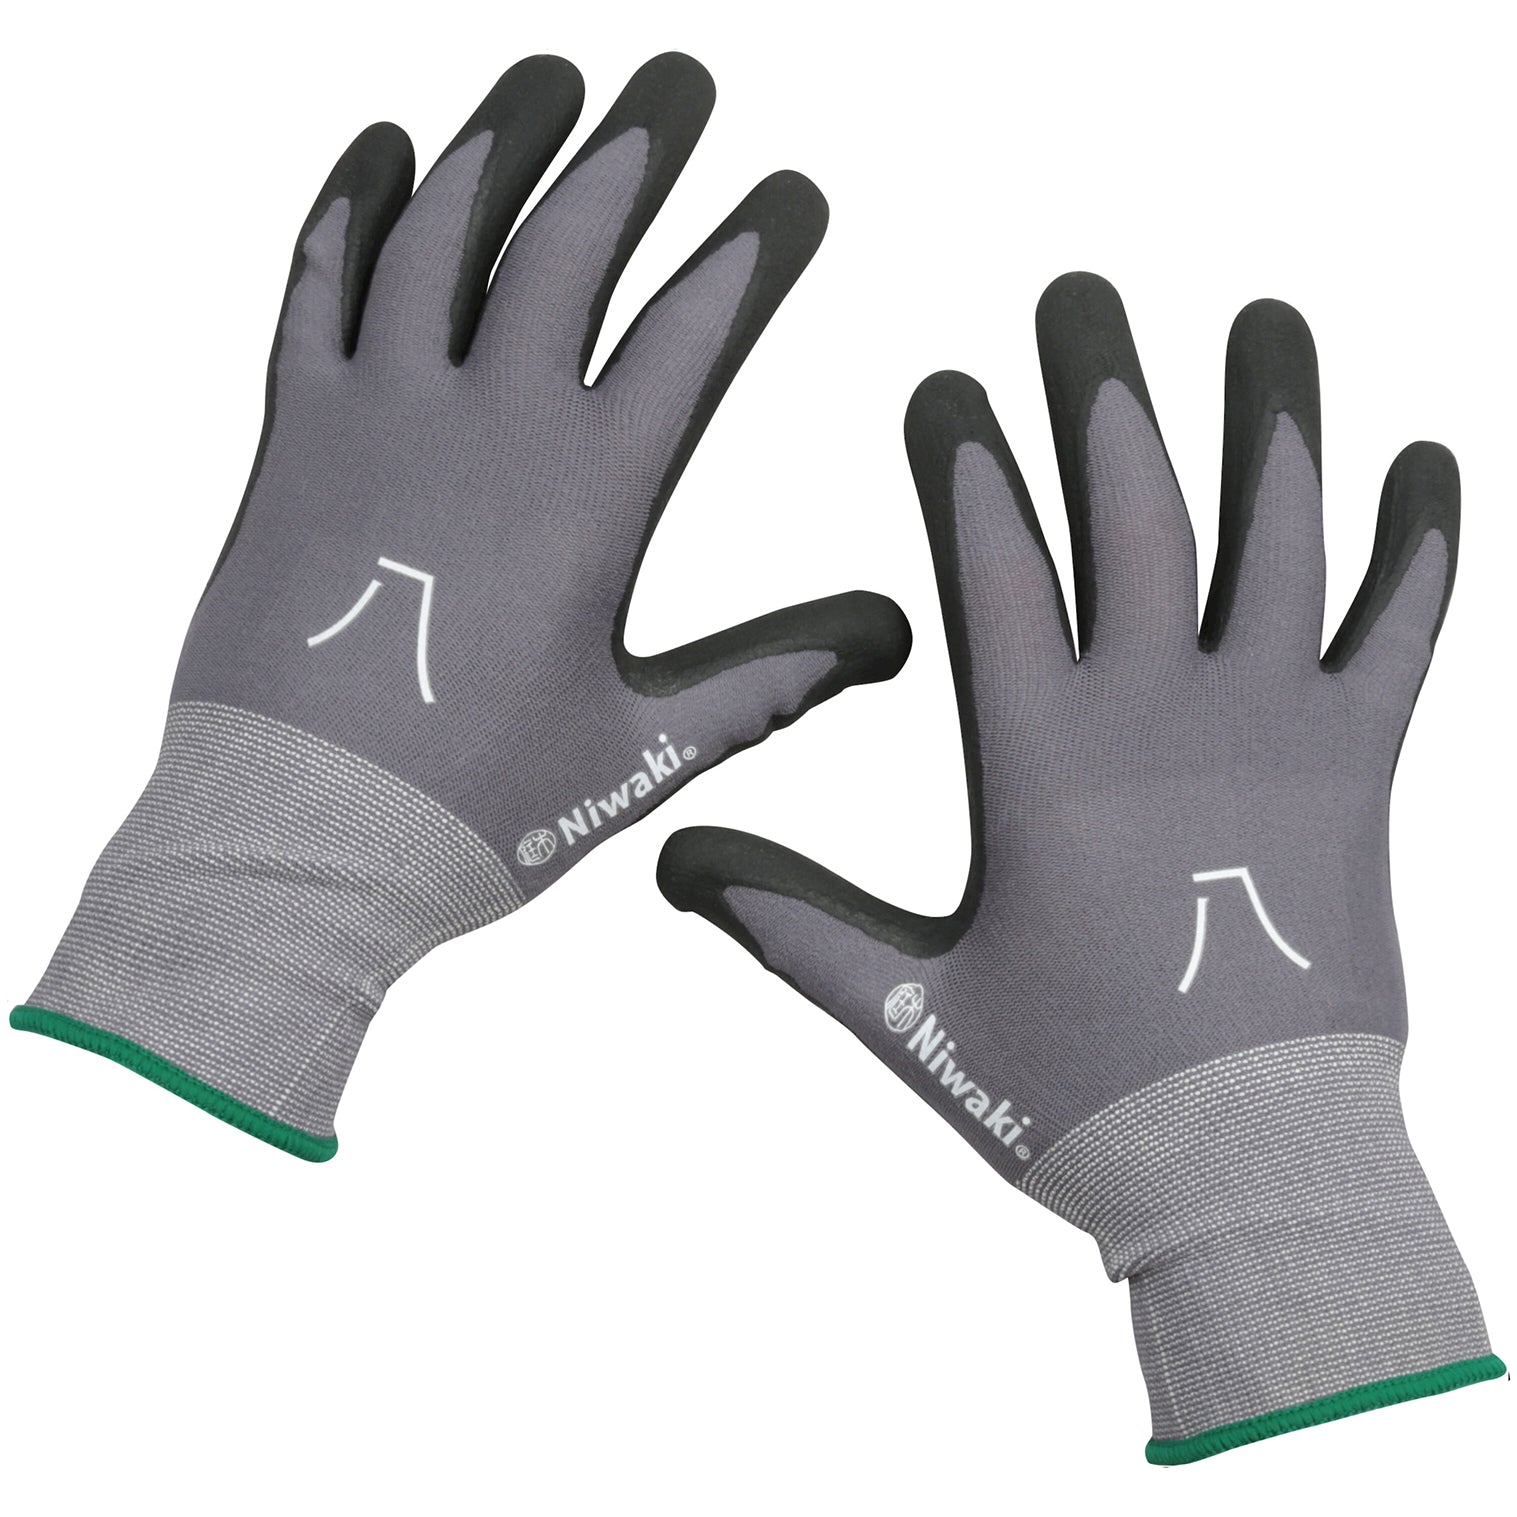 Gardening Gloves - Medium with Green Cuff